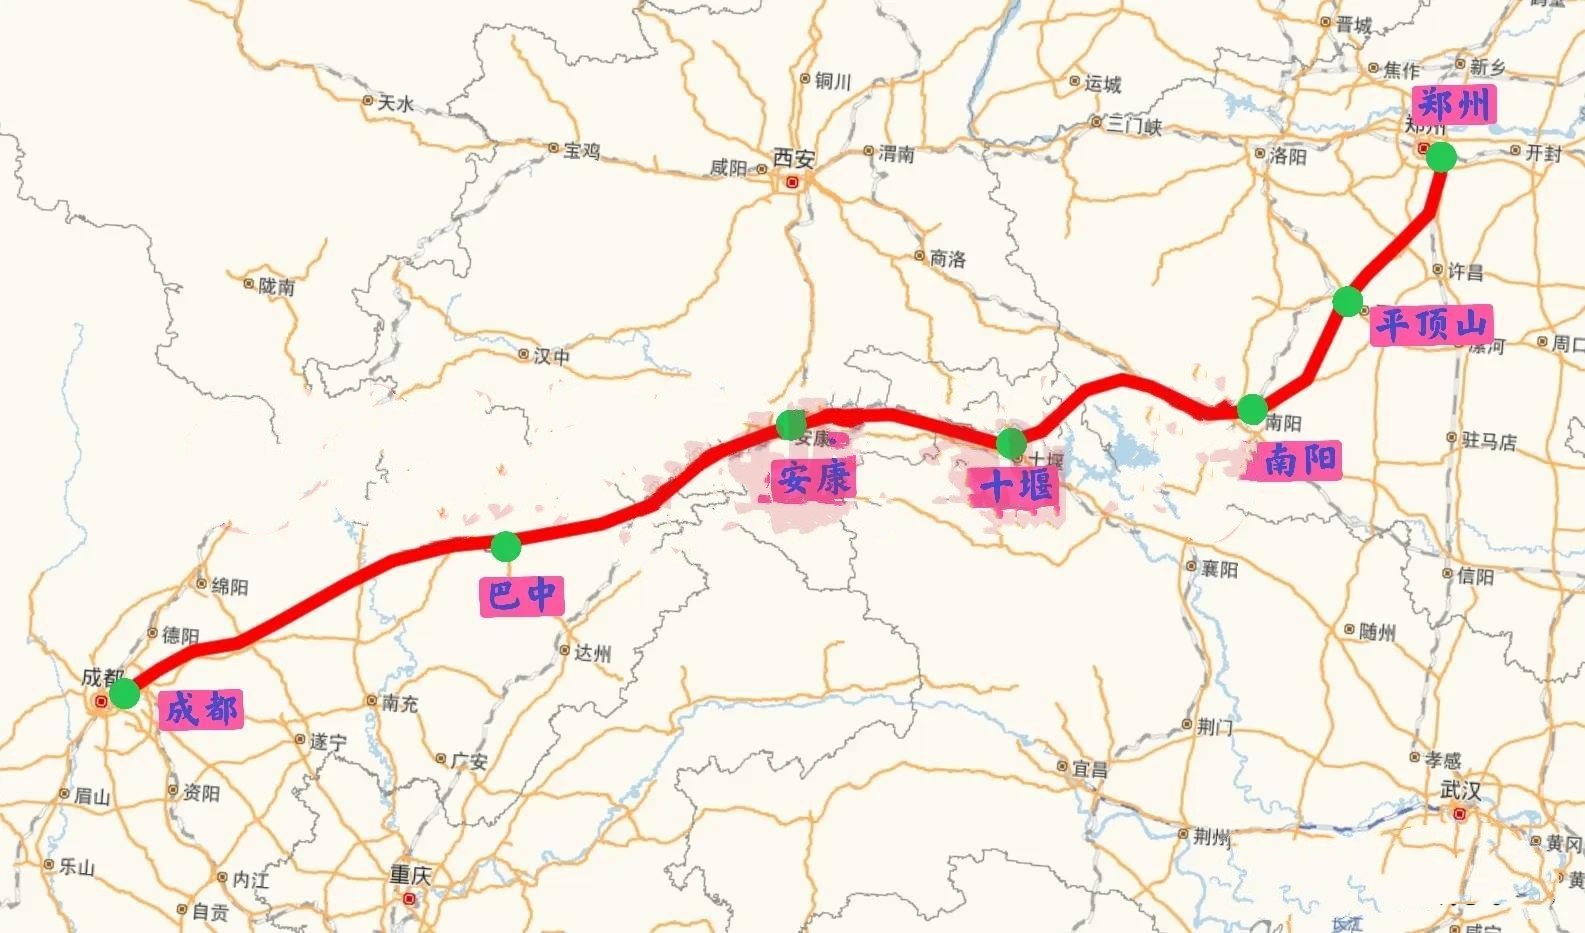 成都至郑州高铁规划路线图,途径巴中安康十堰南阳等地